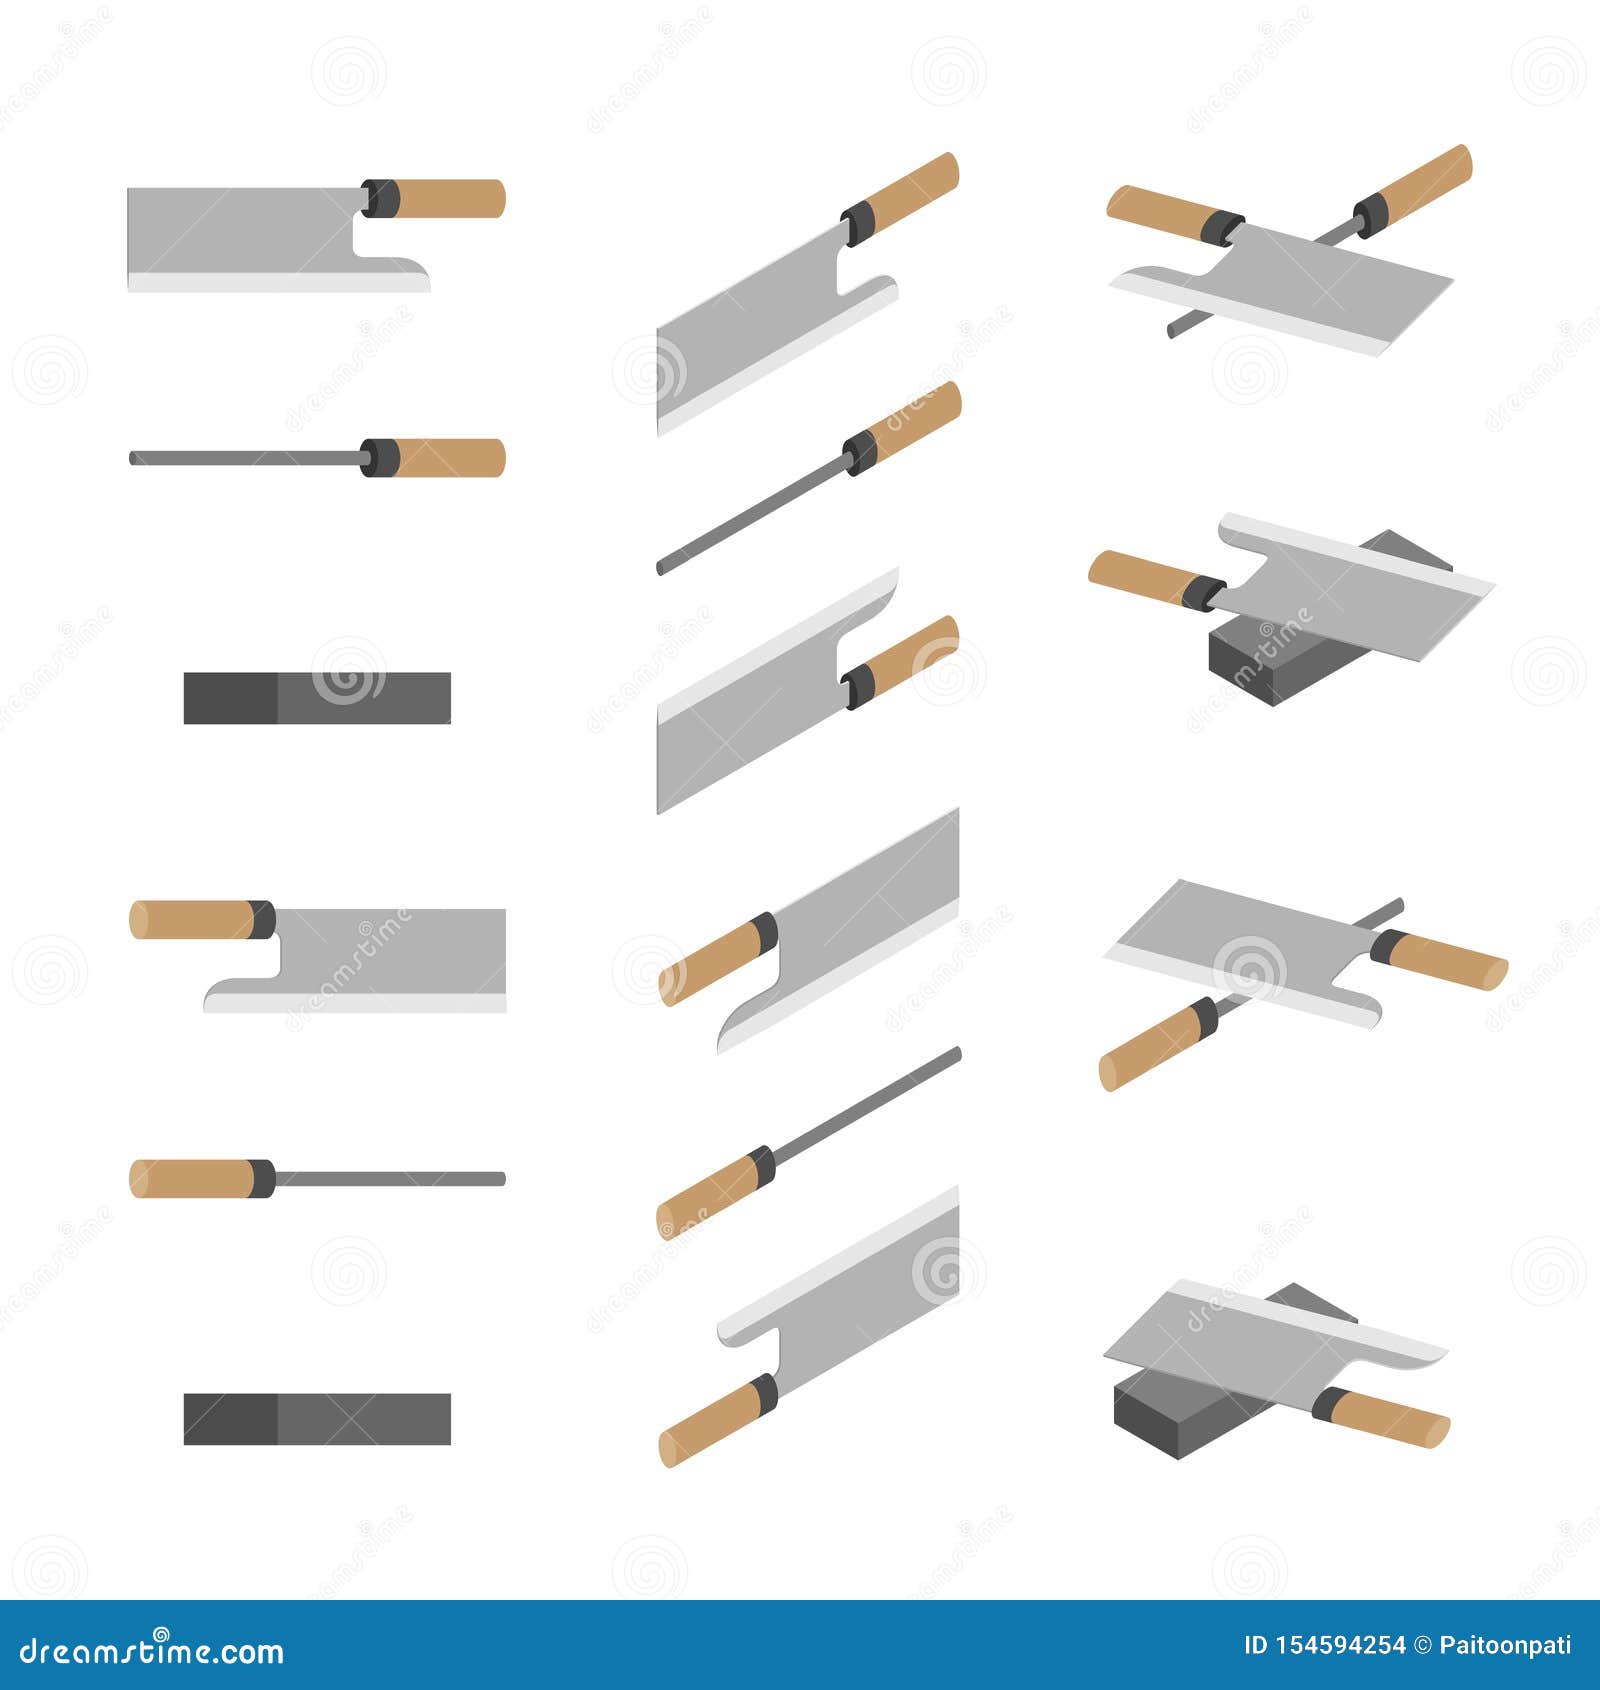 https://thumbs.dreamstime.com/z/japanese-chinese-knives-whetstone-sharpener-d-isometric-sharpen-kitchen-knife-utensils-concept-poster-banner-design-154594254.jpg